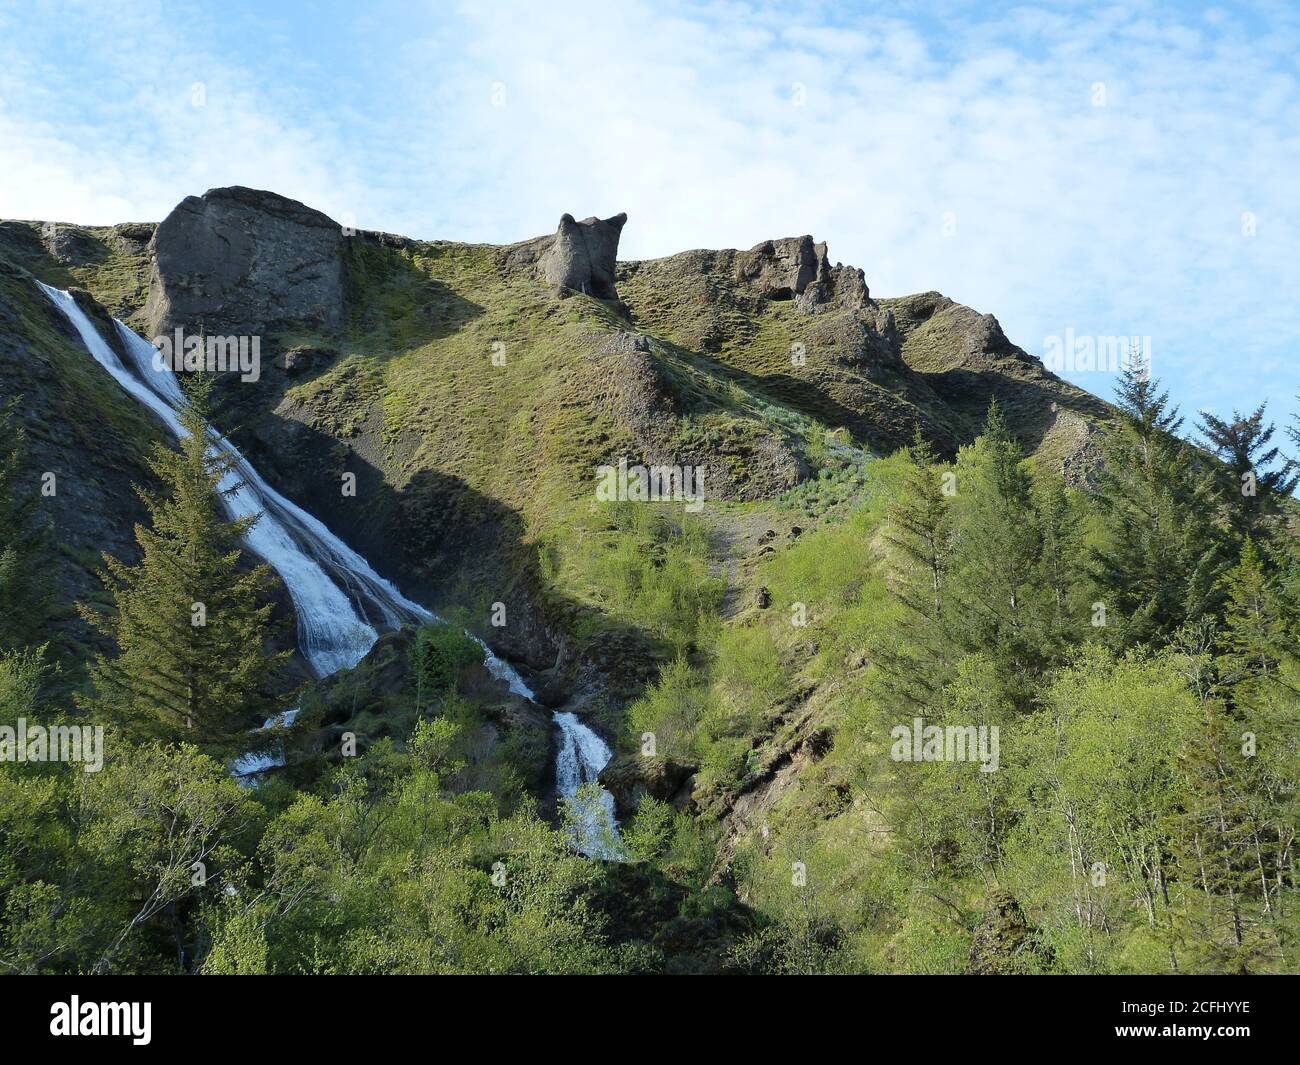 Schöne Sommer grüne Landschaft in Island. Nadelwald, Berge, Wasserfall. Wolkiger blauer Himmel. Erstaunlicher Wasserfall Systrafoss auf grünem Hügel. Stockfoto